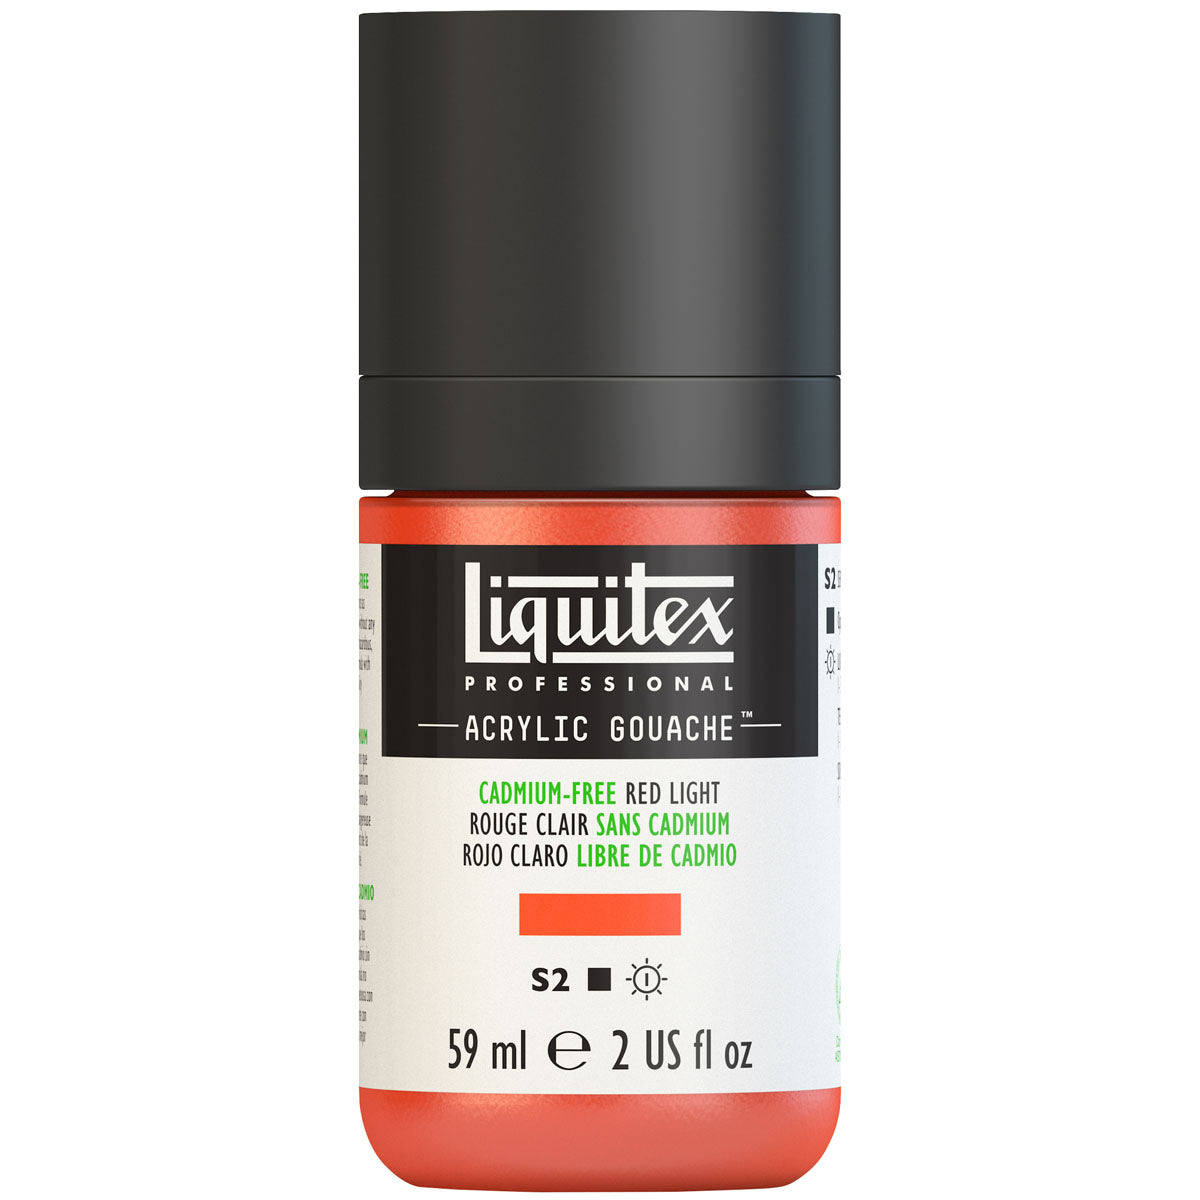 Liquitex - Gouache Acrylique 59ml S2 - Cadimum-Free Red Light